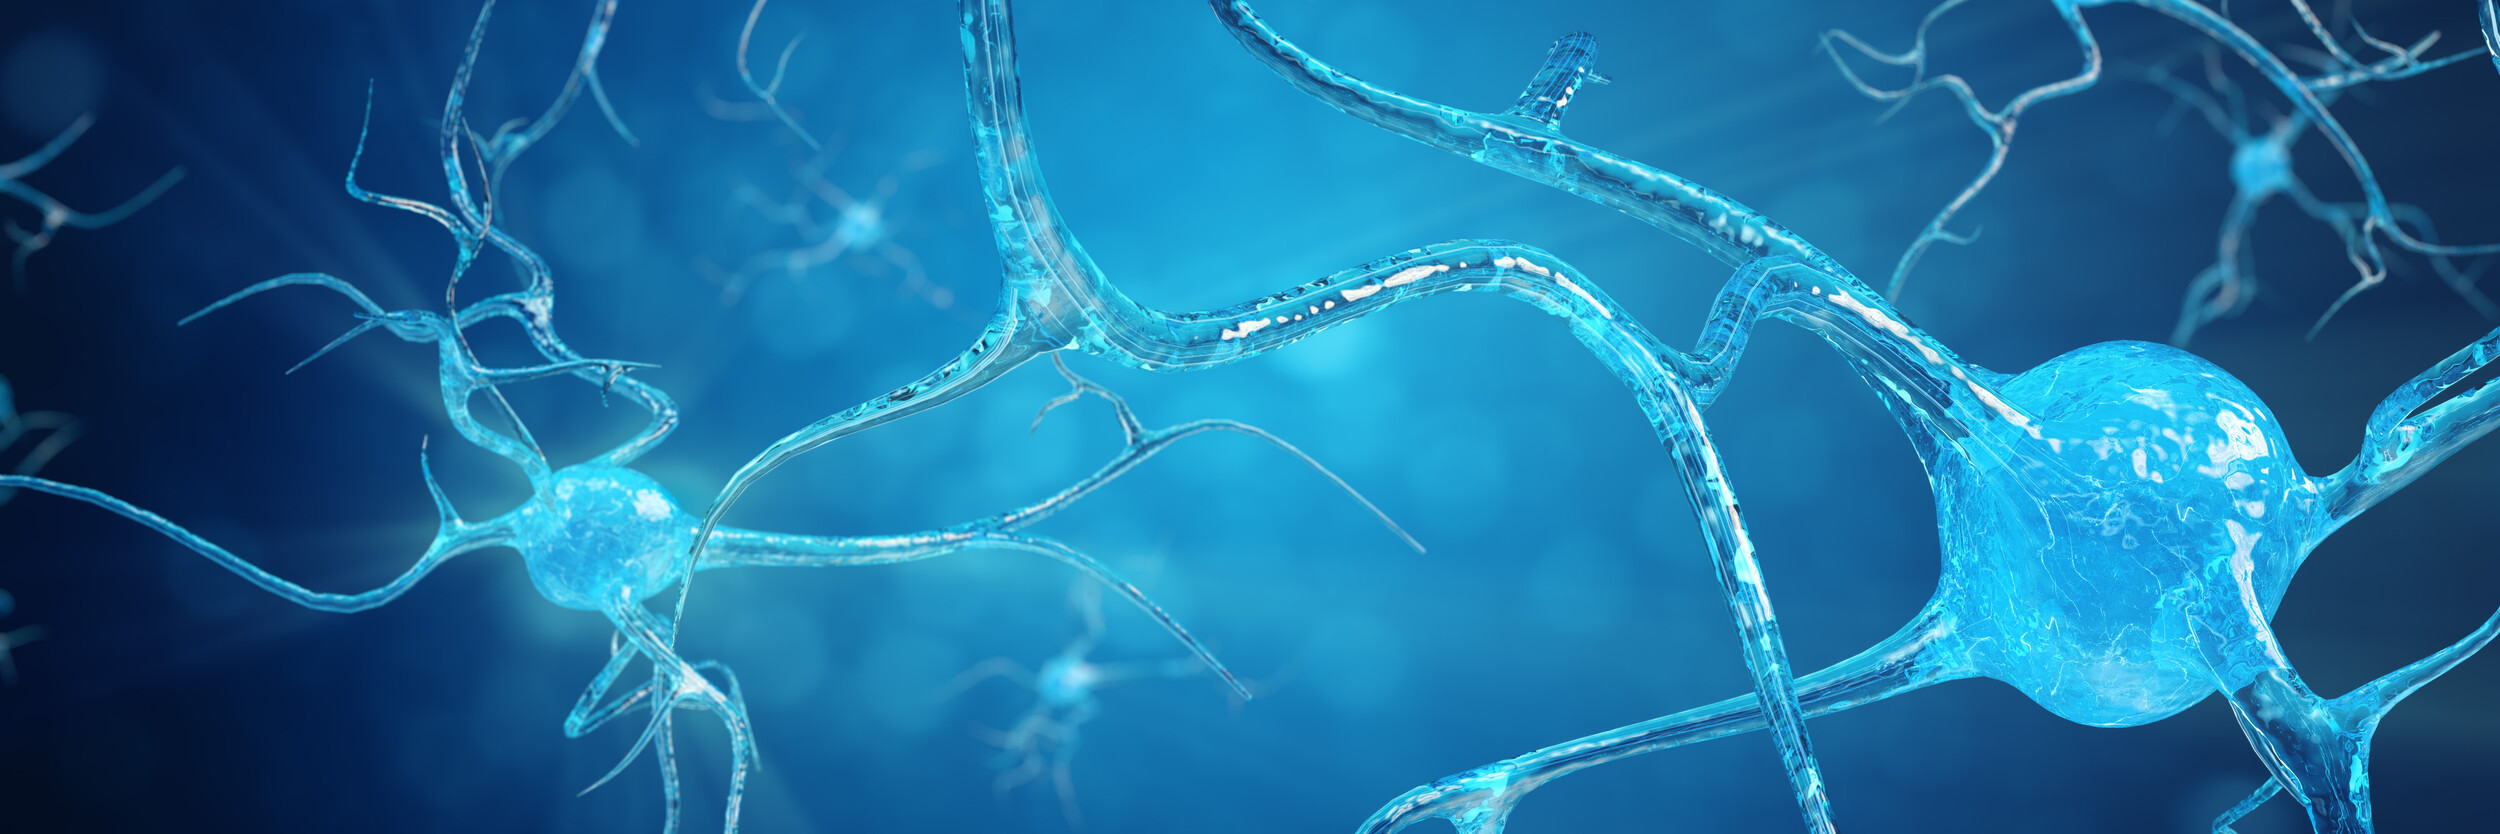 synapsen-ermoeglichen-die-kommunikation-zwischen-neuronen (nervenzellen)